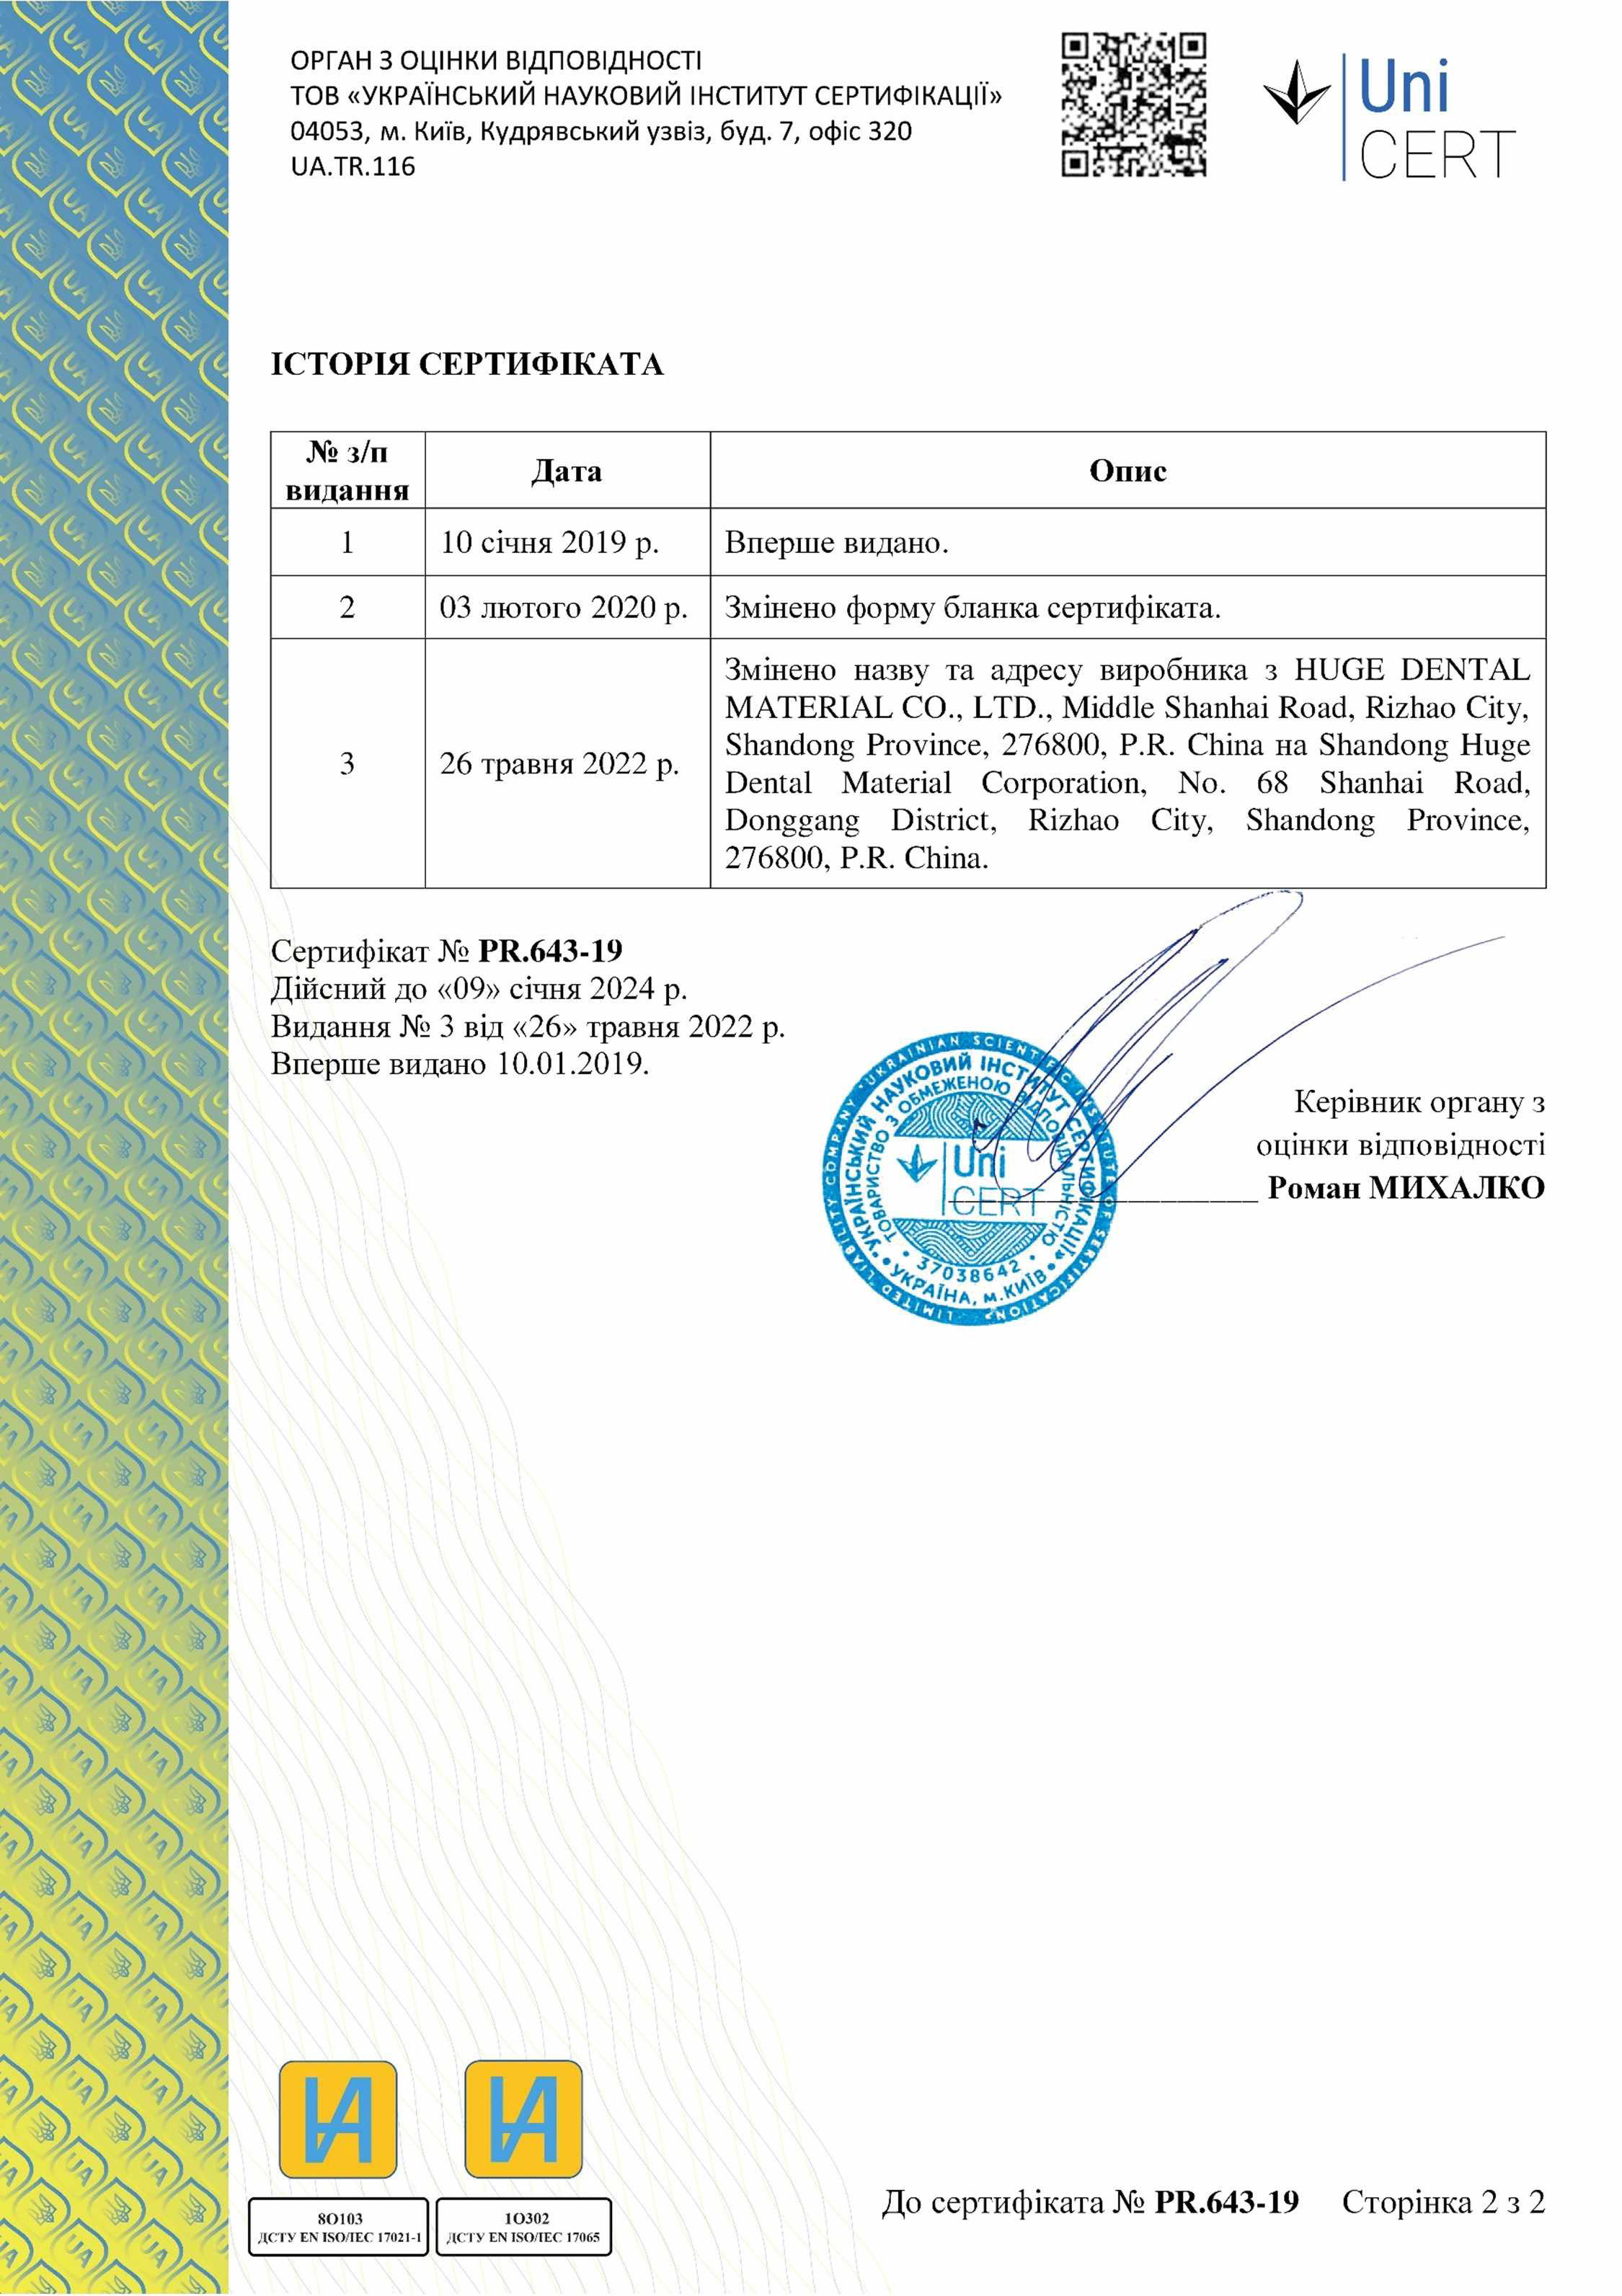 Сертификат соответствия Uni Cert (2) 